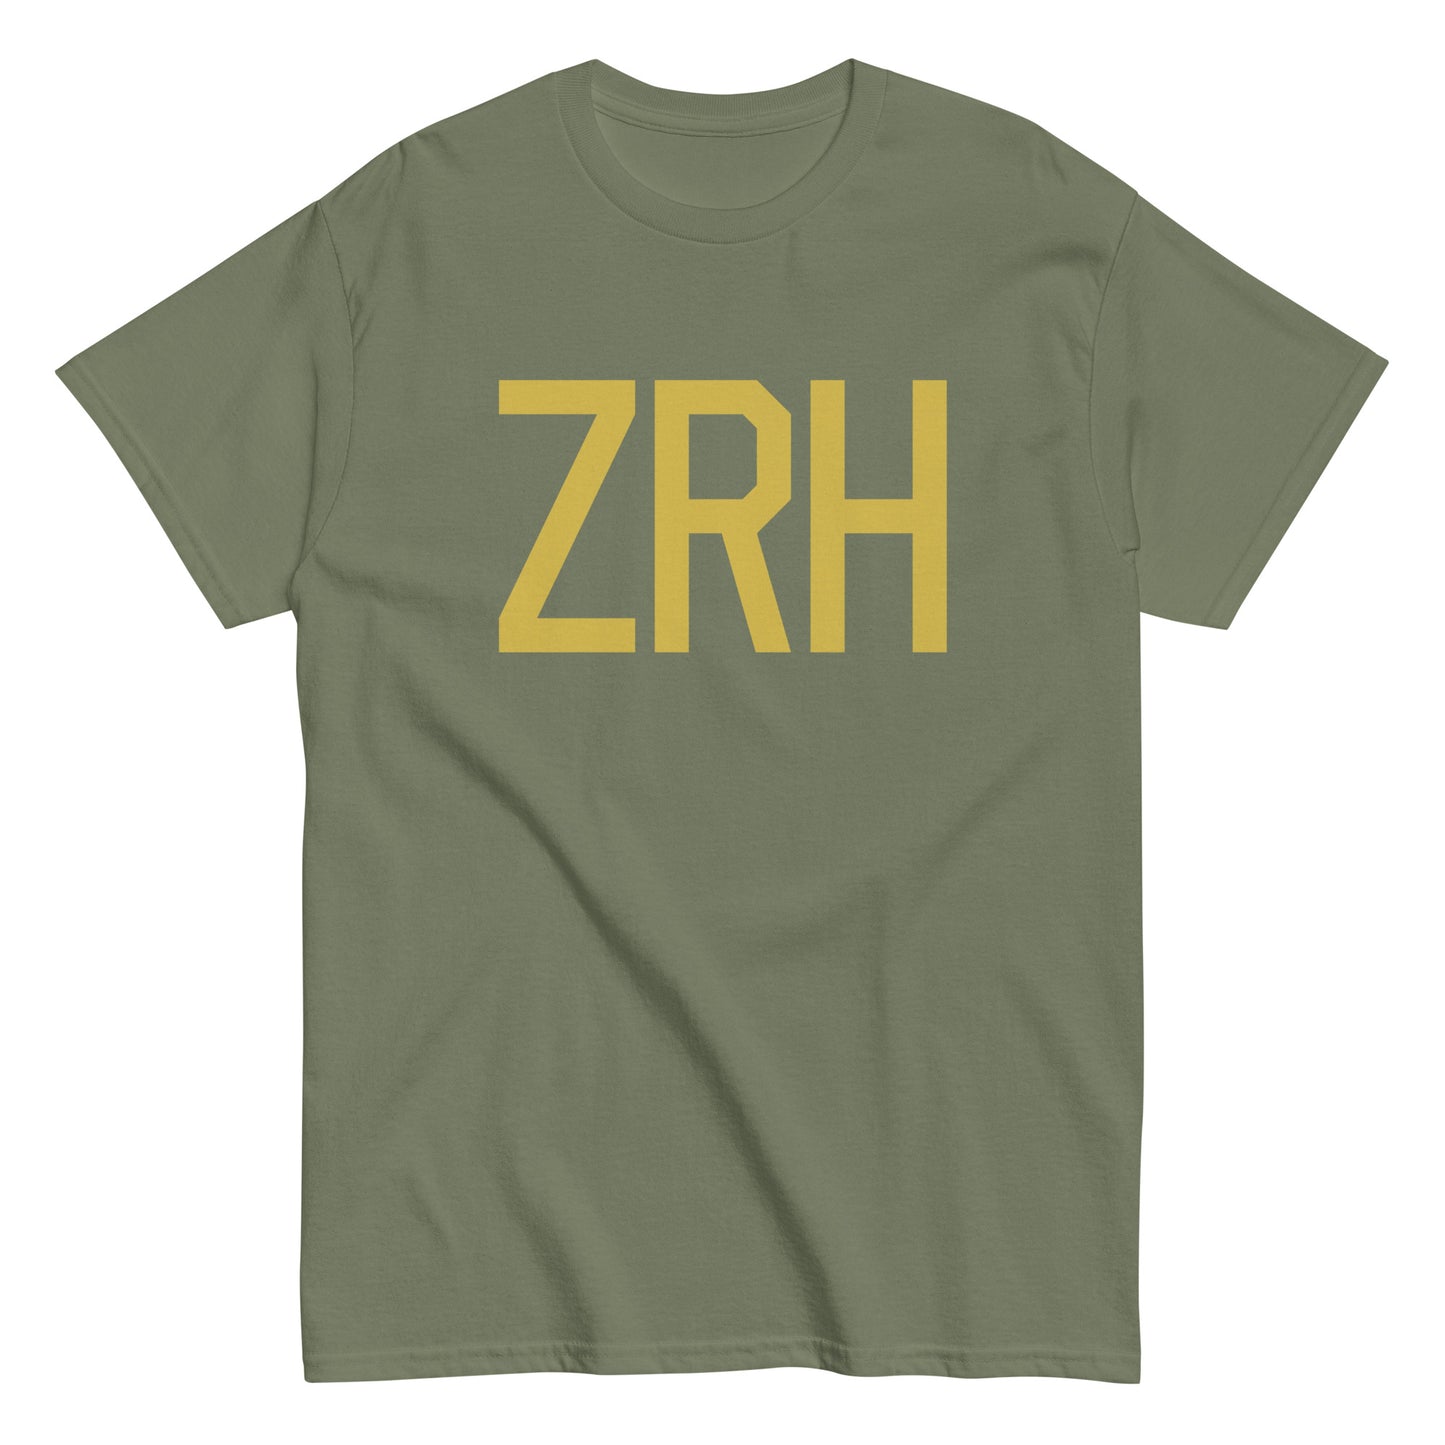 Aviation Enthusiast Men's Tee - Old Gold Graphic • ZRH Zurich • YHM Designs - Image 02